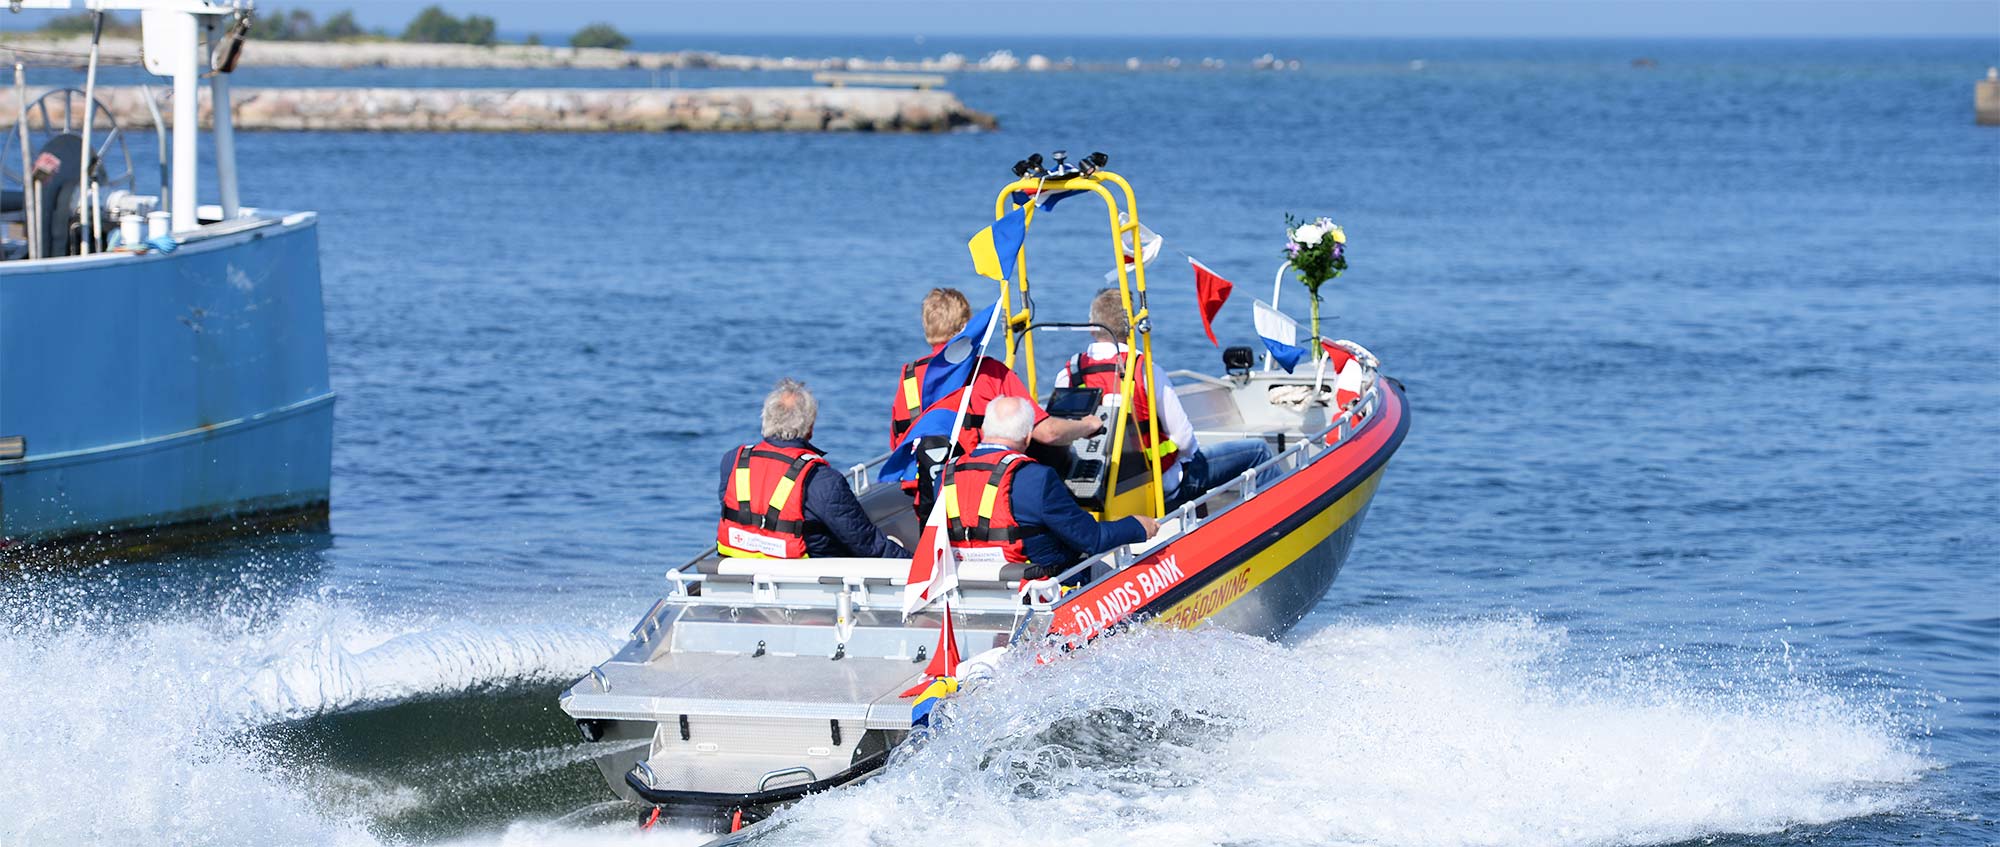 Invigning 2019 av Sjöräddningens nya räddningsbåt på Öland